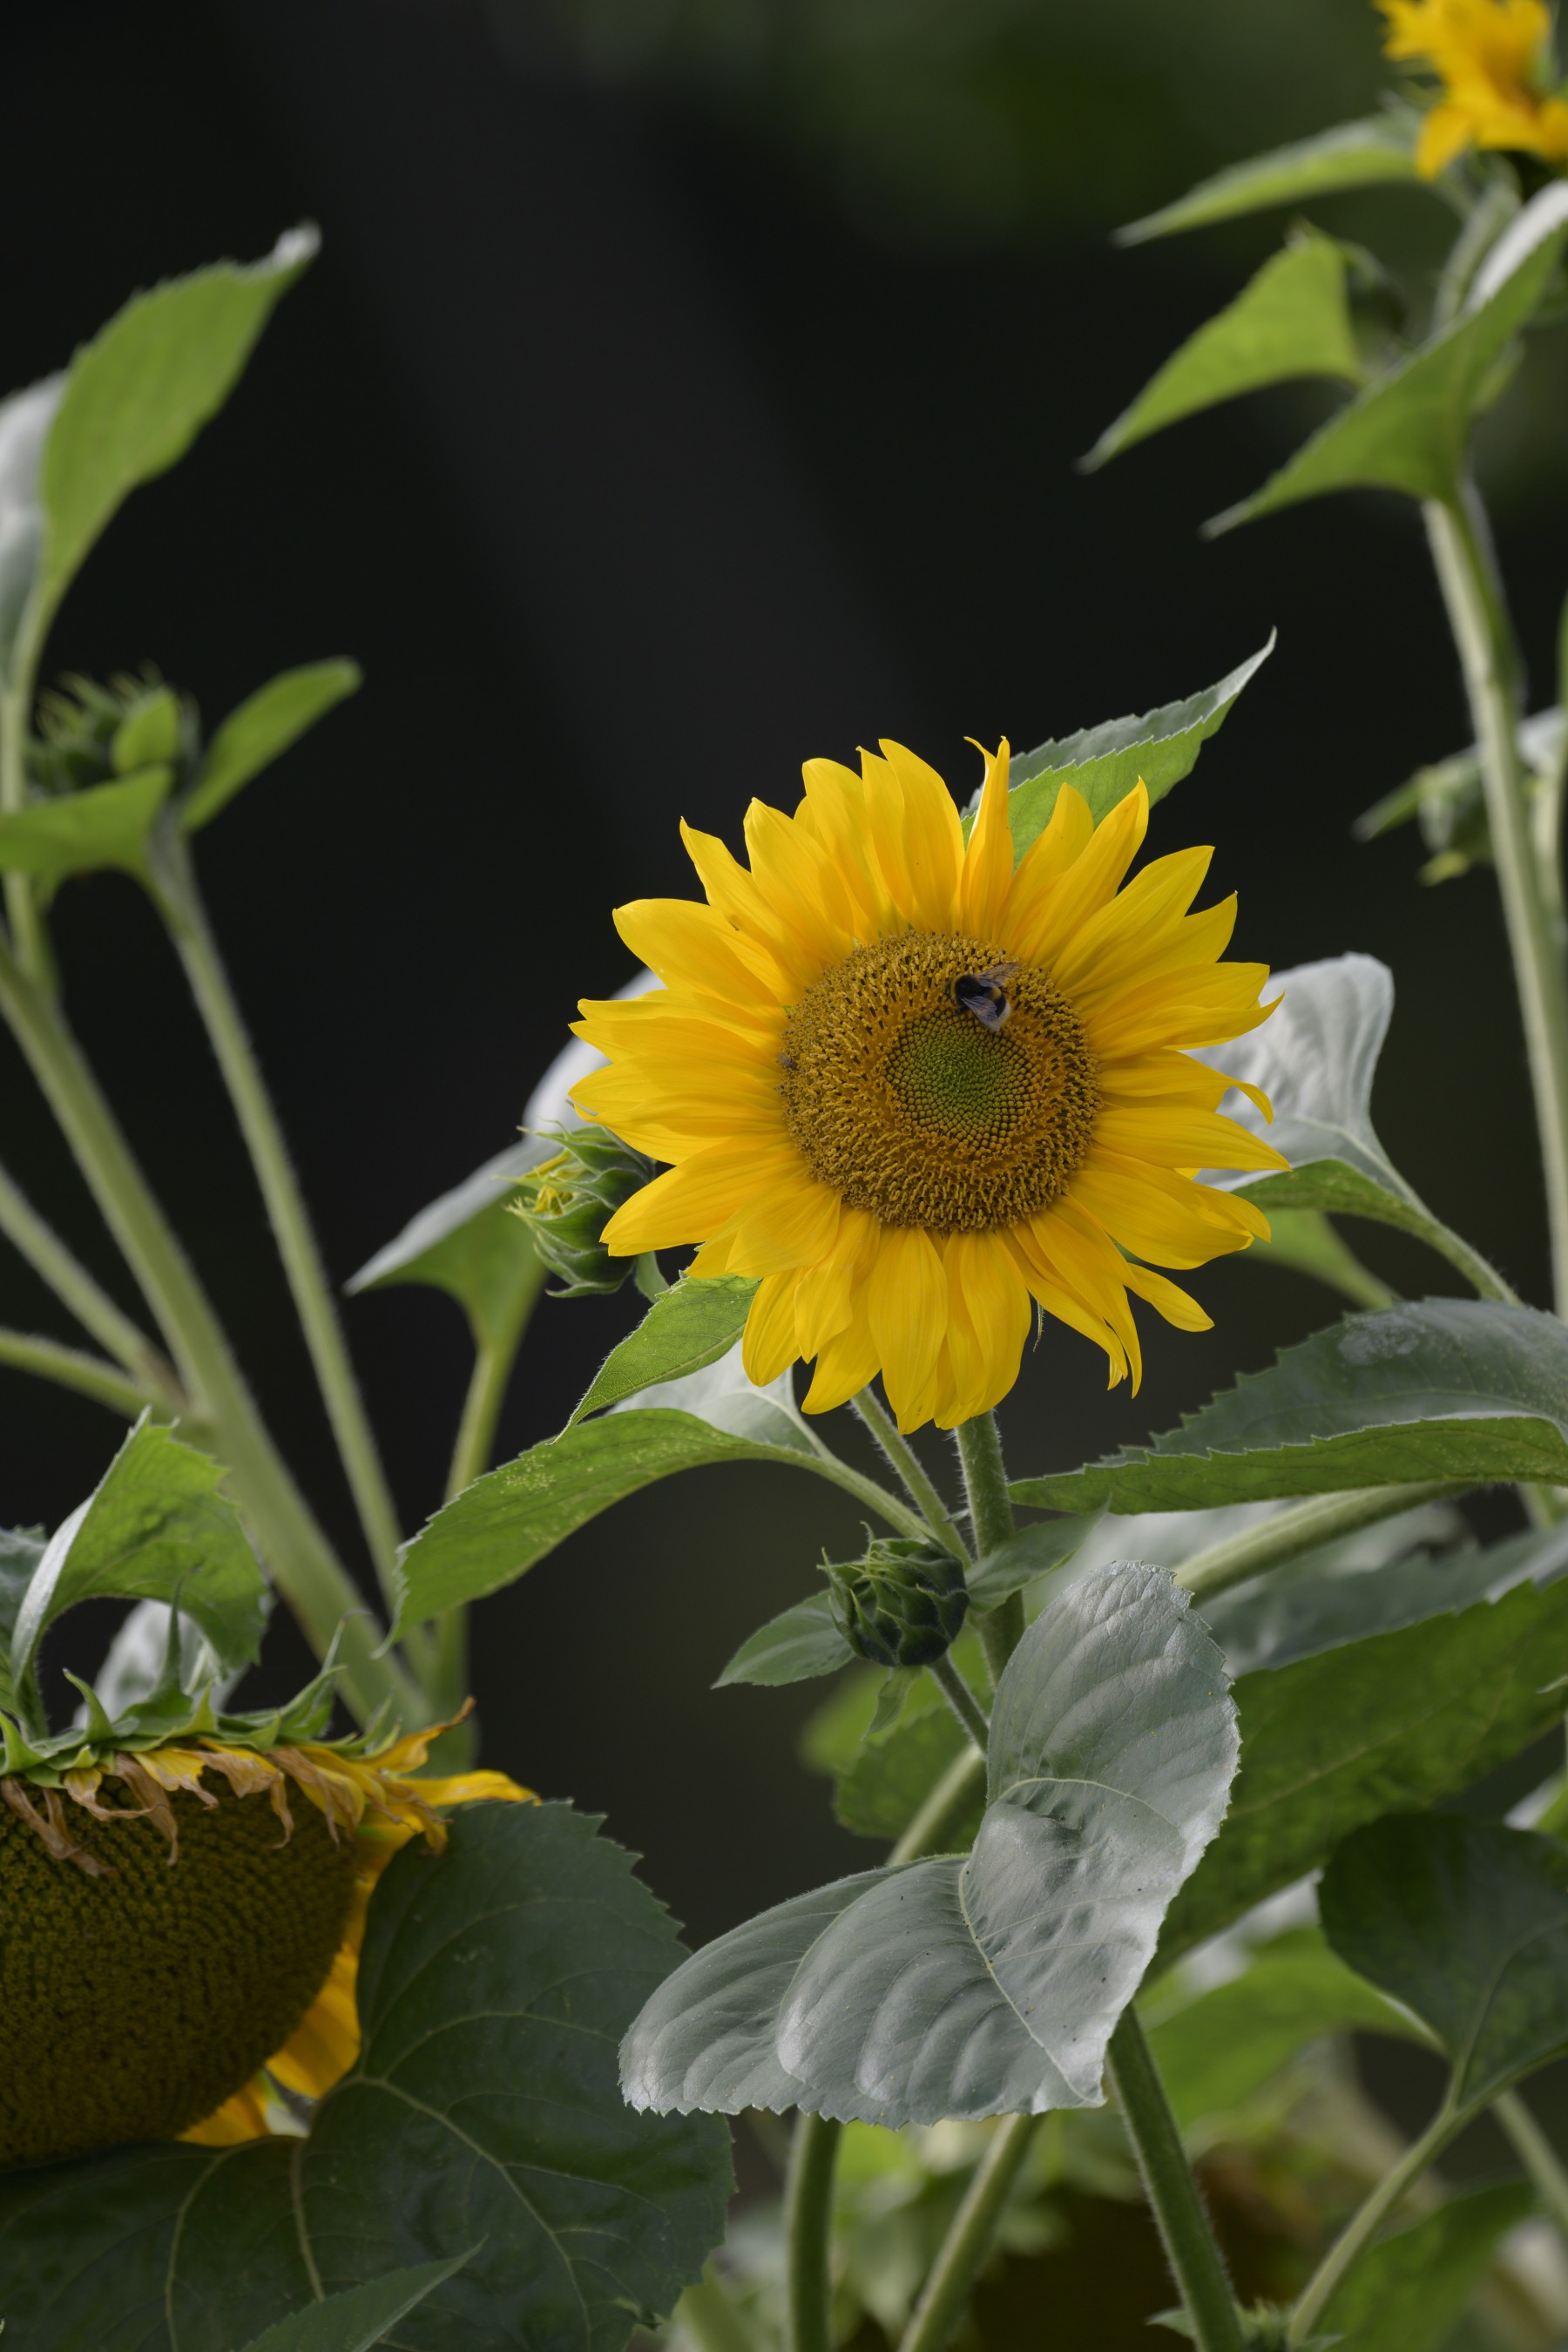 Anwendungsbild: Sonnenblumen in 66% der Größe und volles Feld der Nikon Z7